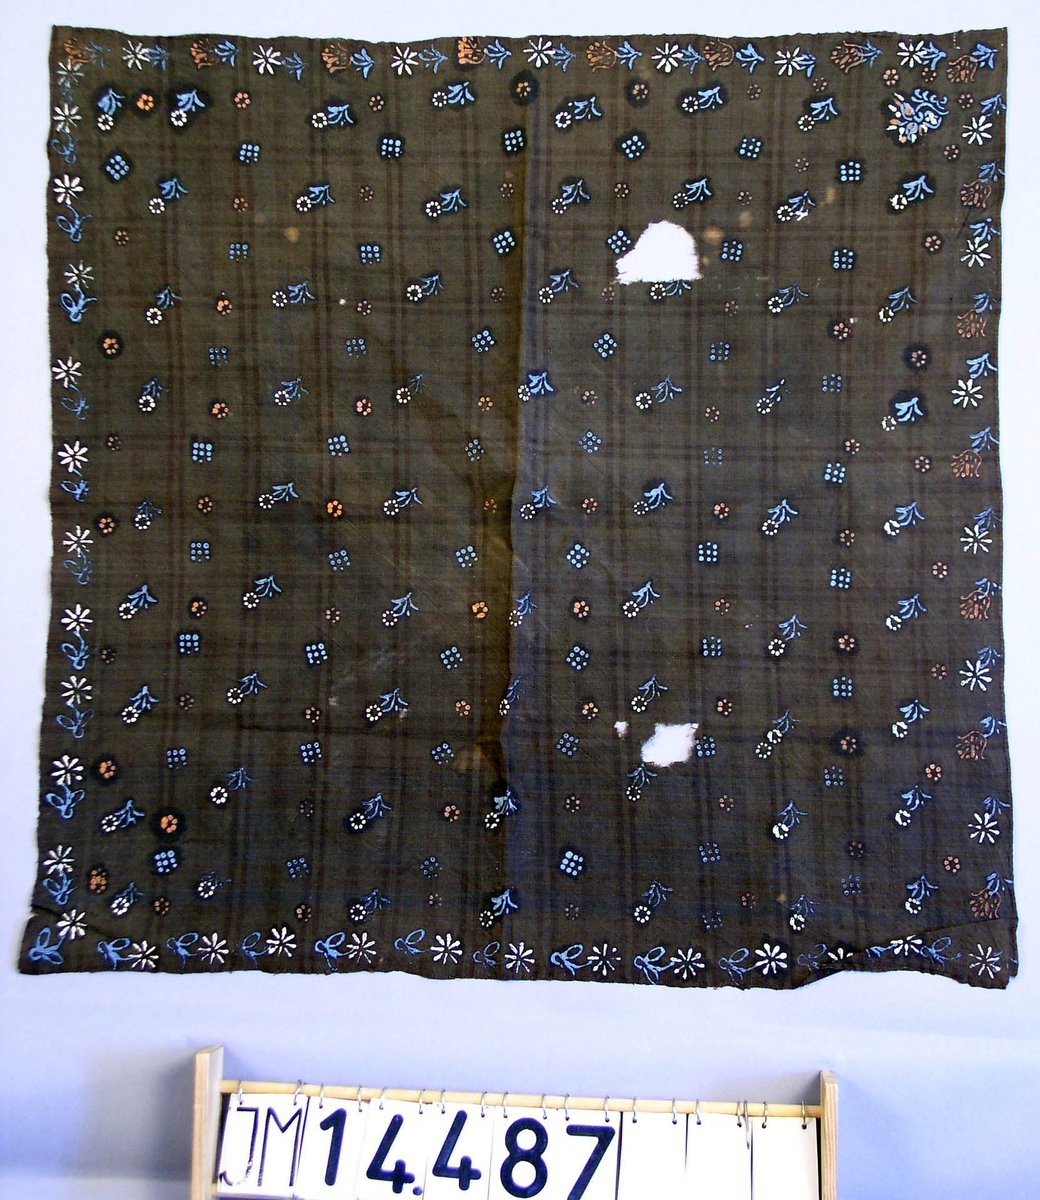 Huvudduk av mörkblått eller svart tuskaftvävt ylle med målat mönster av oljefärg föreställande små blommor i ljusblått, vitt och rosa.